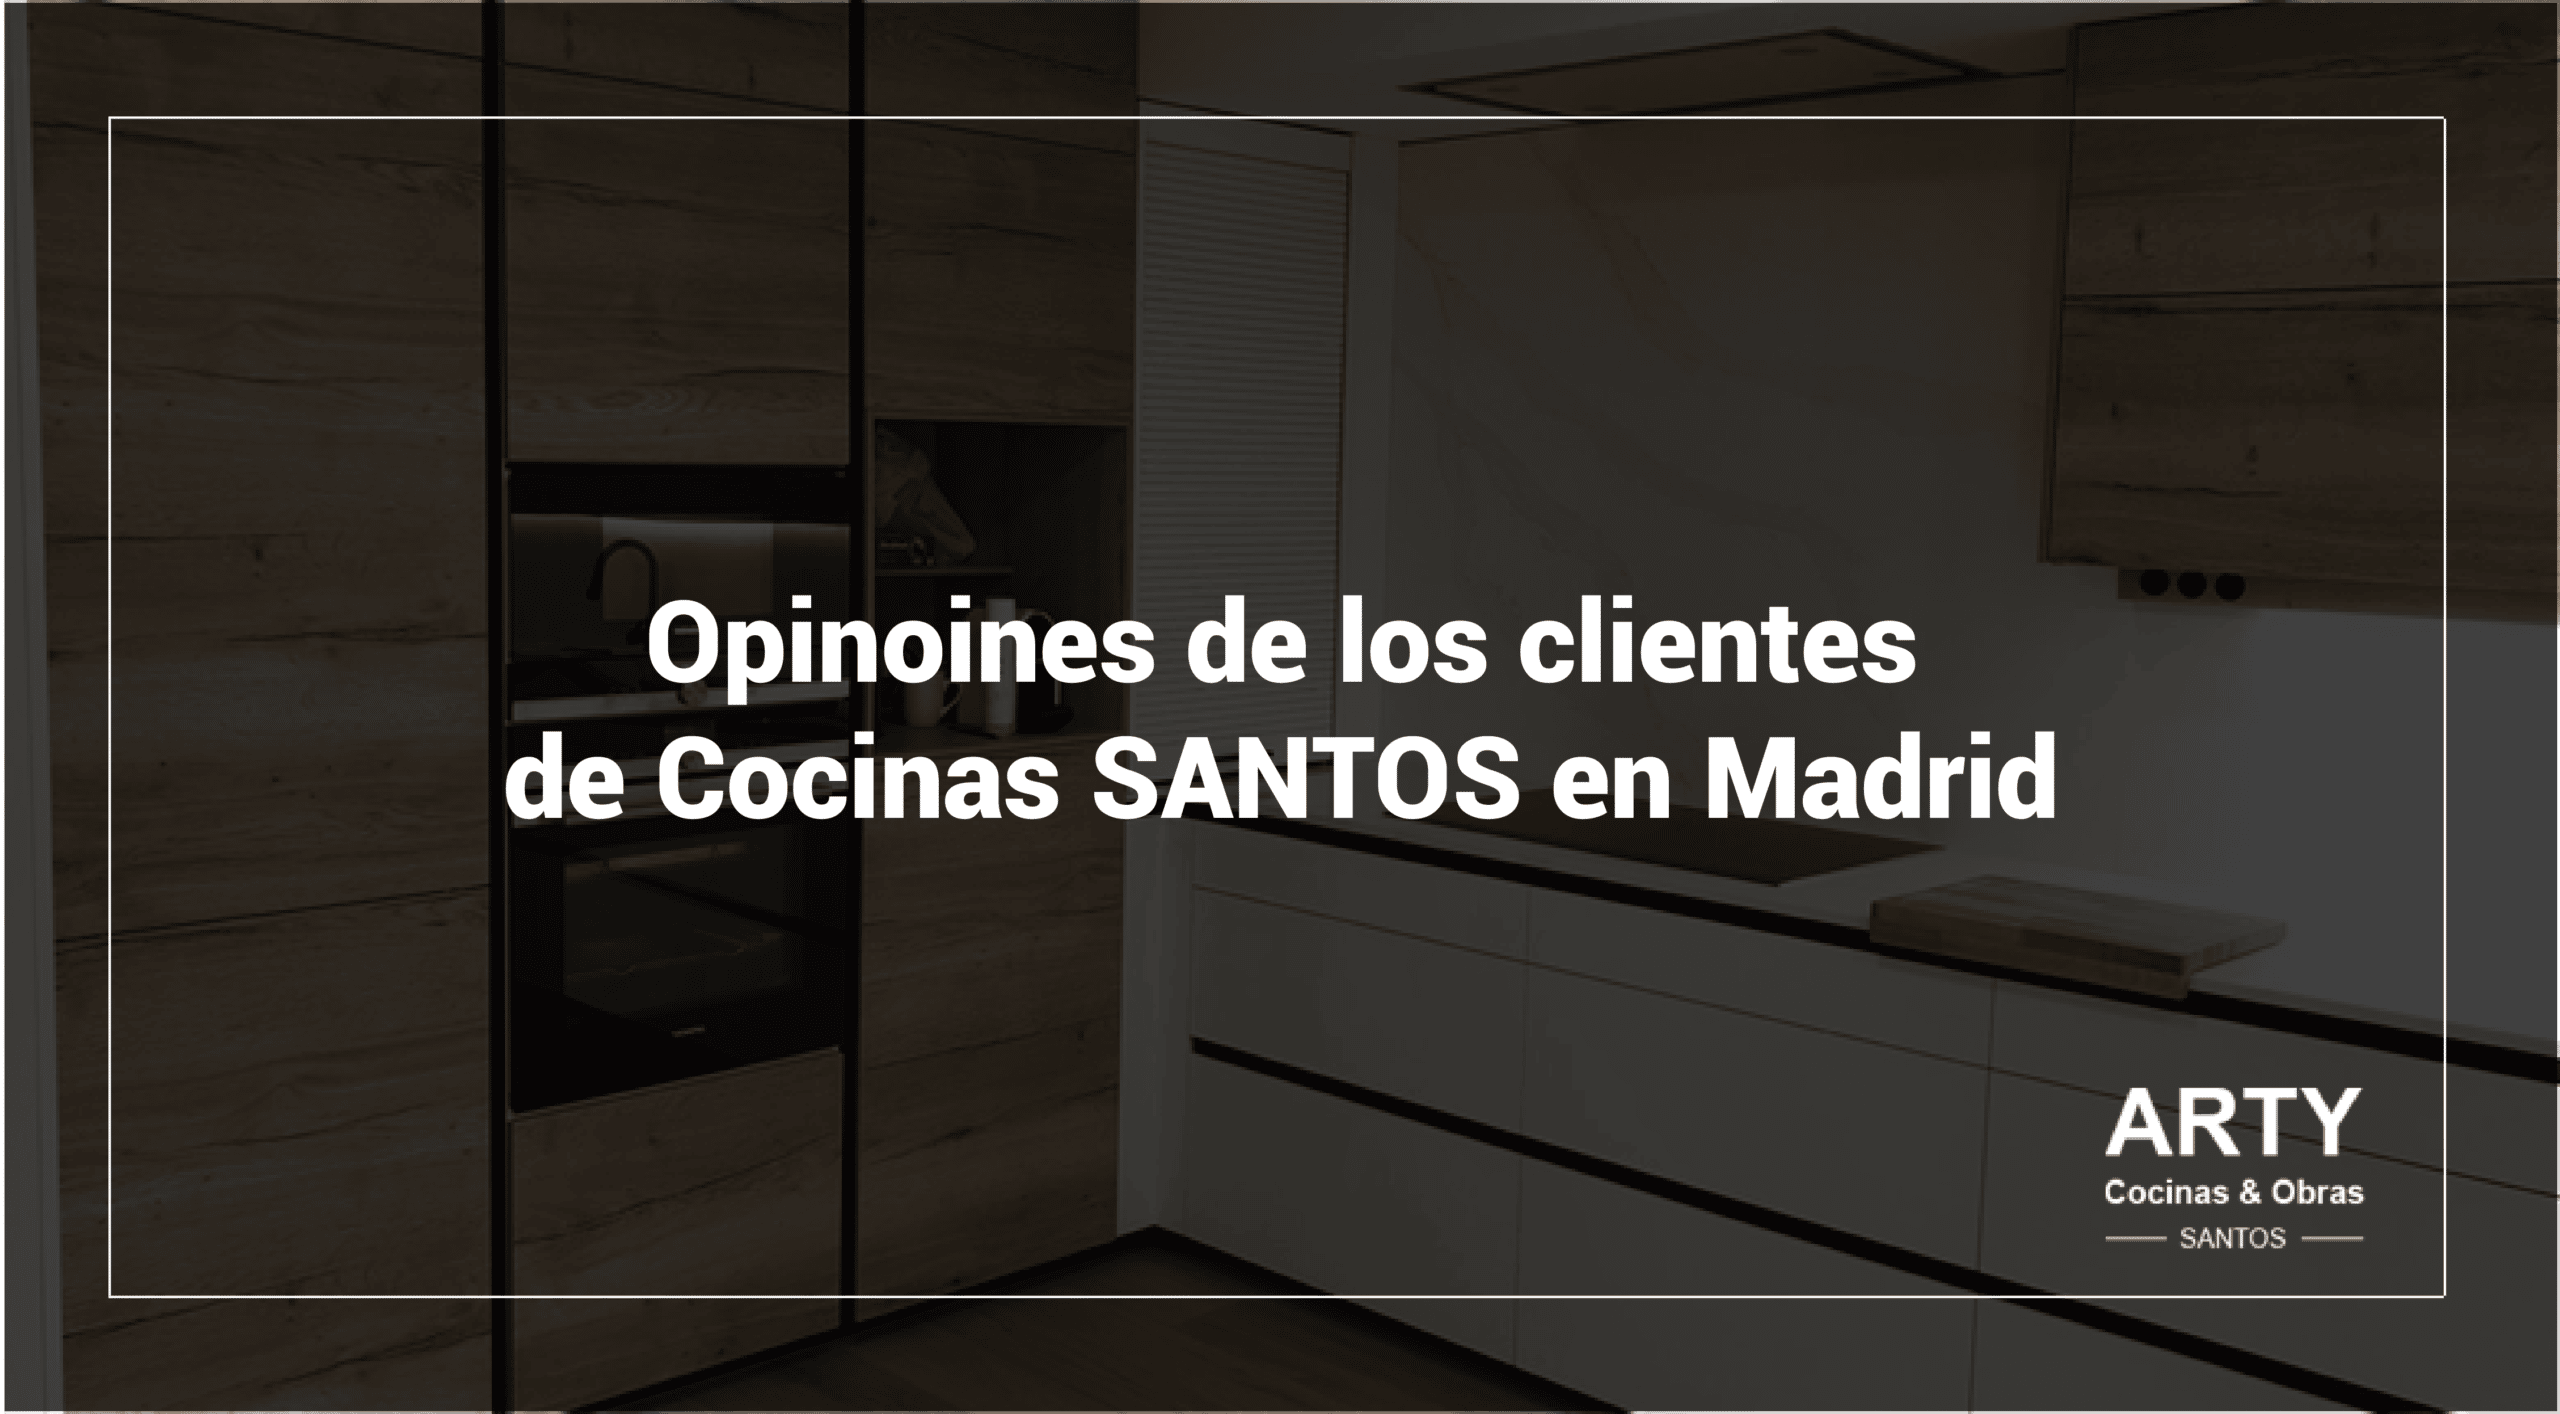 Opiniones de Cocinas SANTOS Madrid en Google